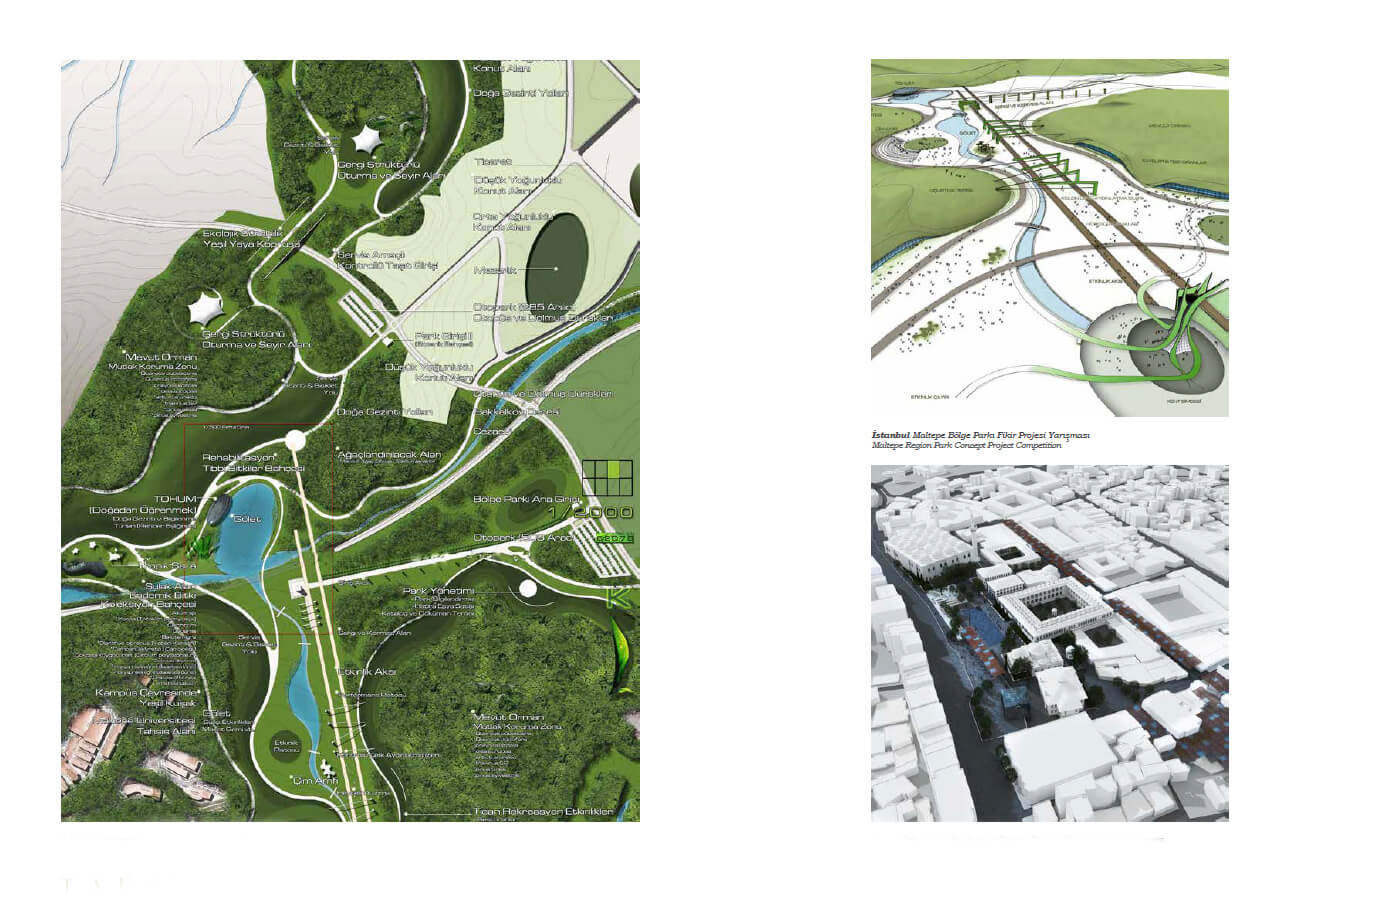 İstanbul Maltepe Bölge Parkı Fikir Projesi Yarışması<br>Maltepe Region Park Concept Project Competition